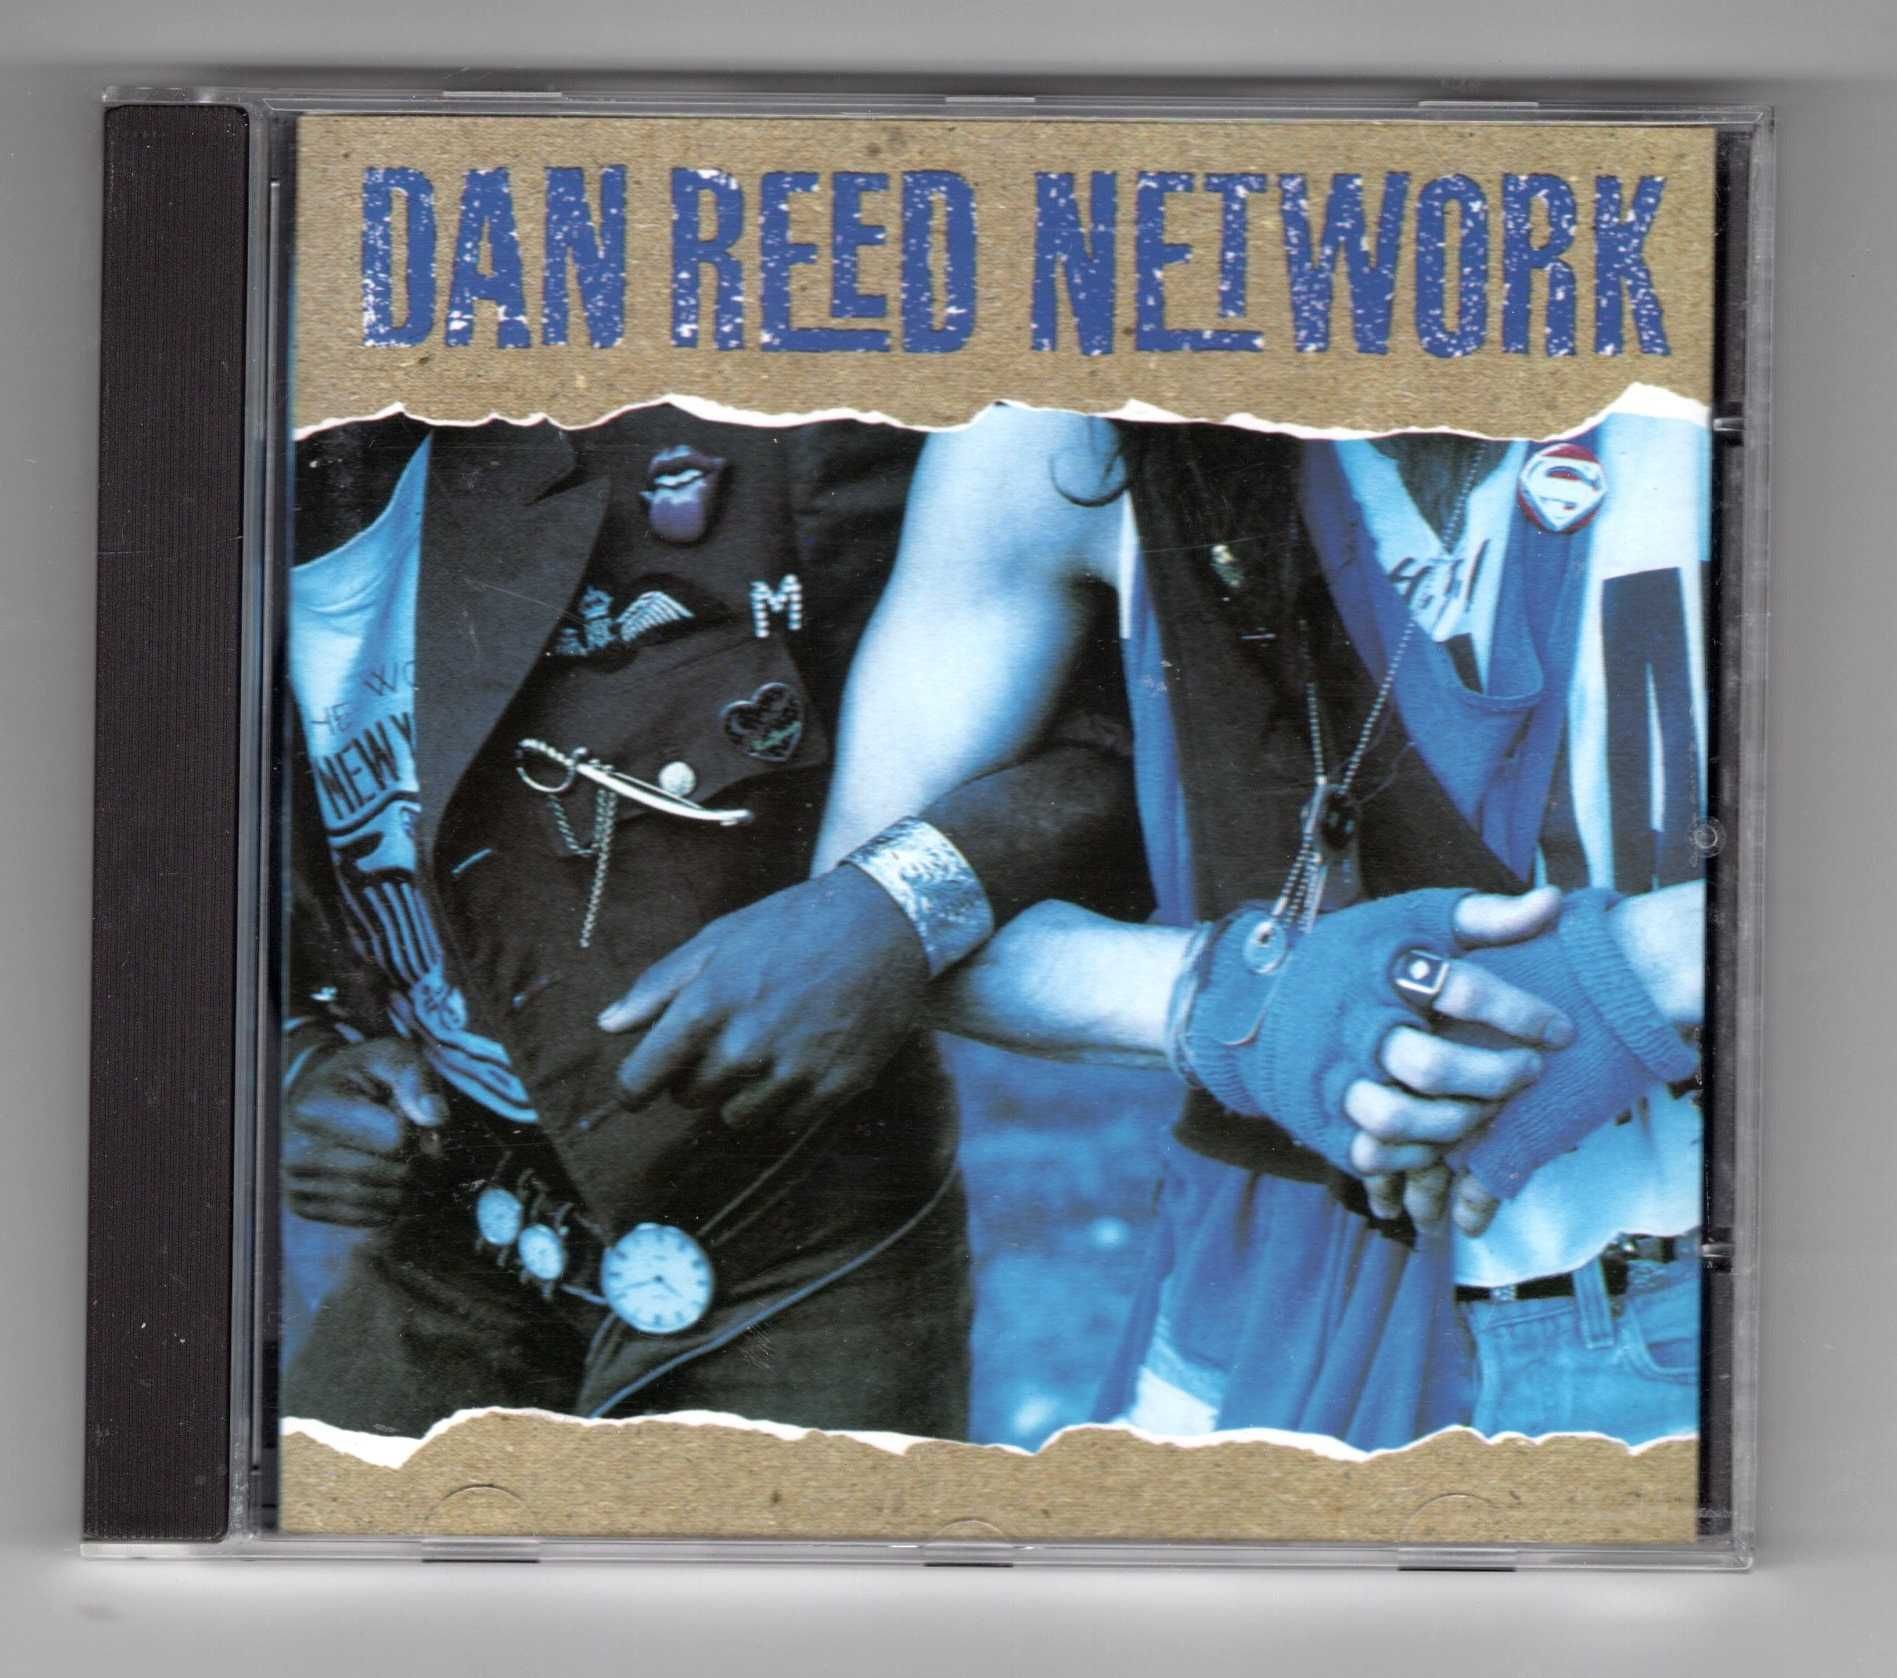 Dan Reed Network - Dan Reed Network (CD)